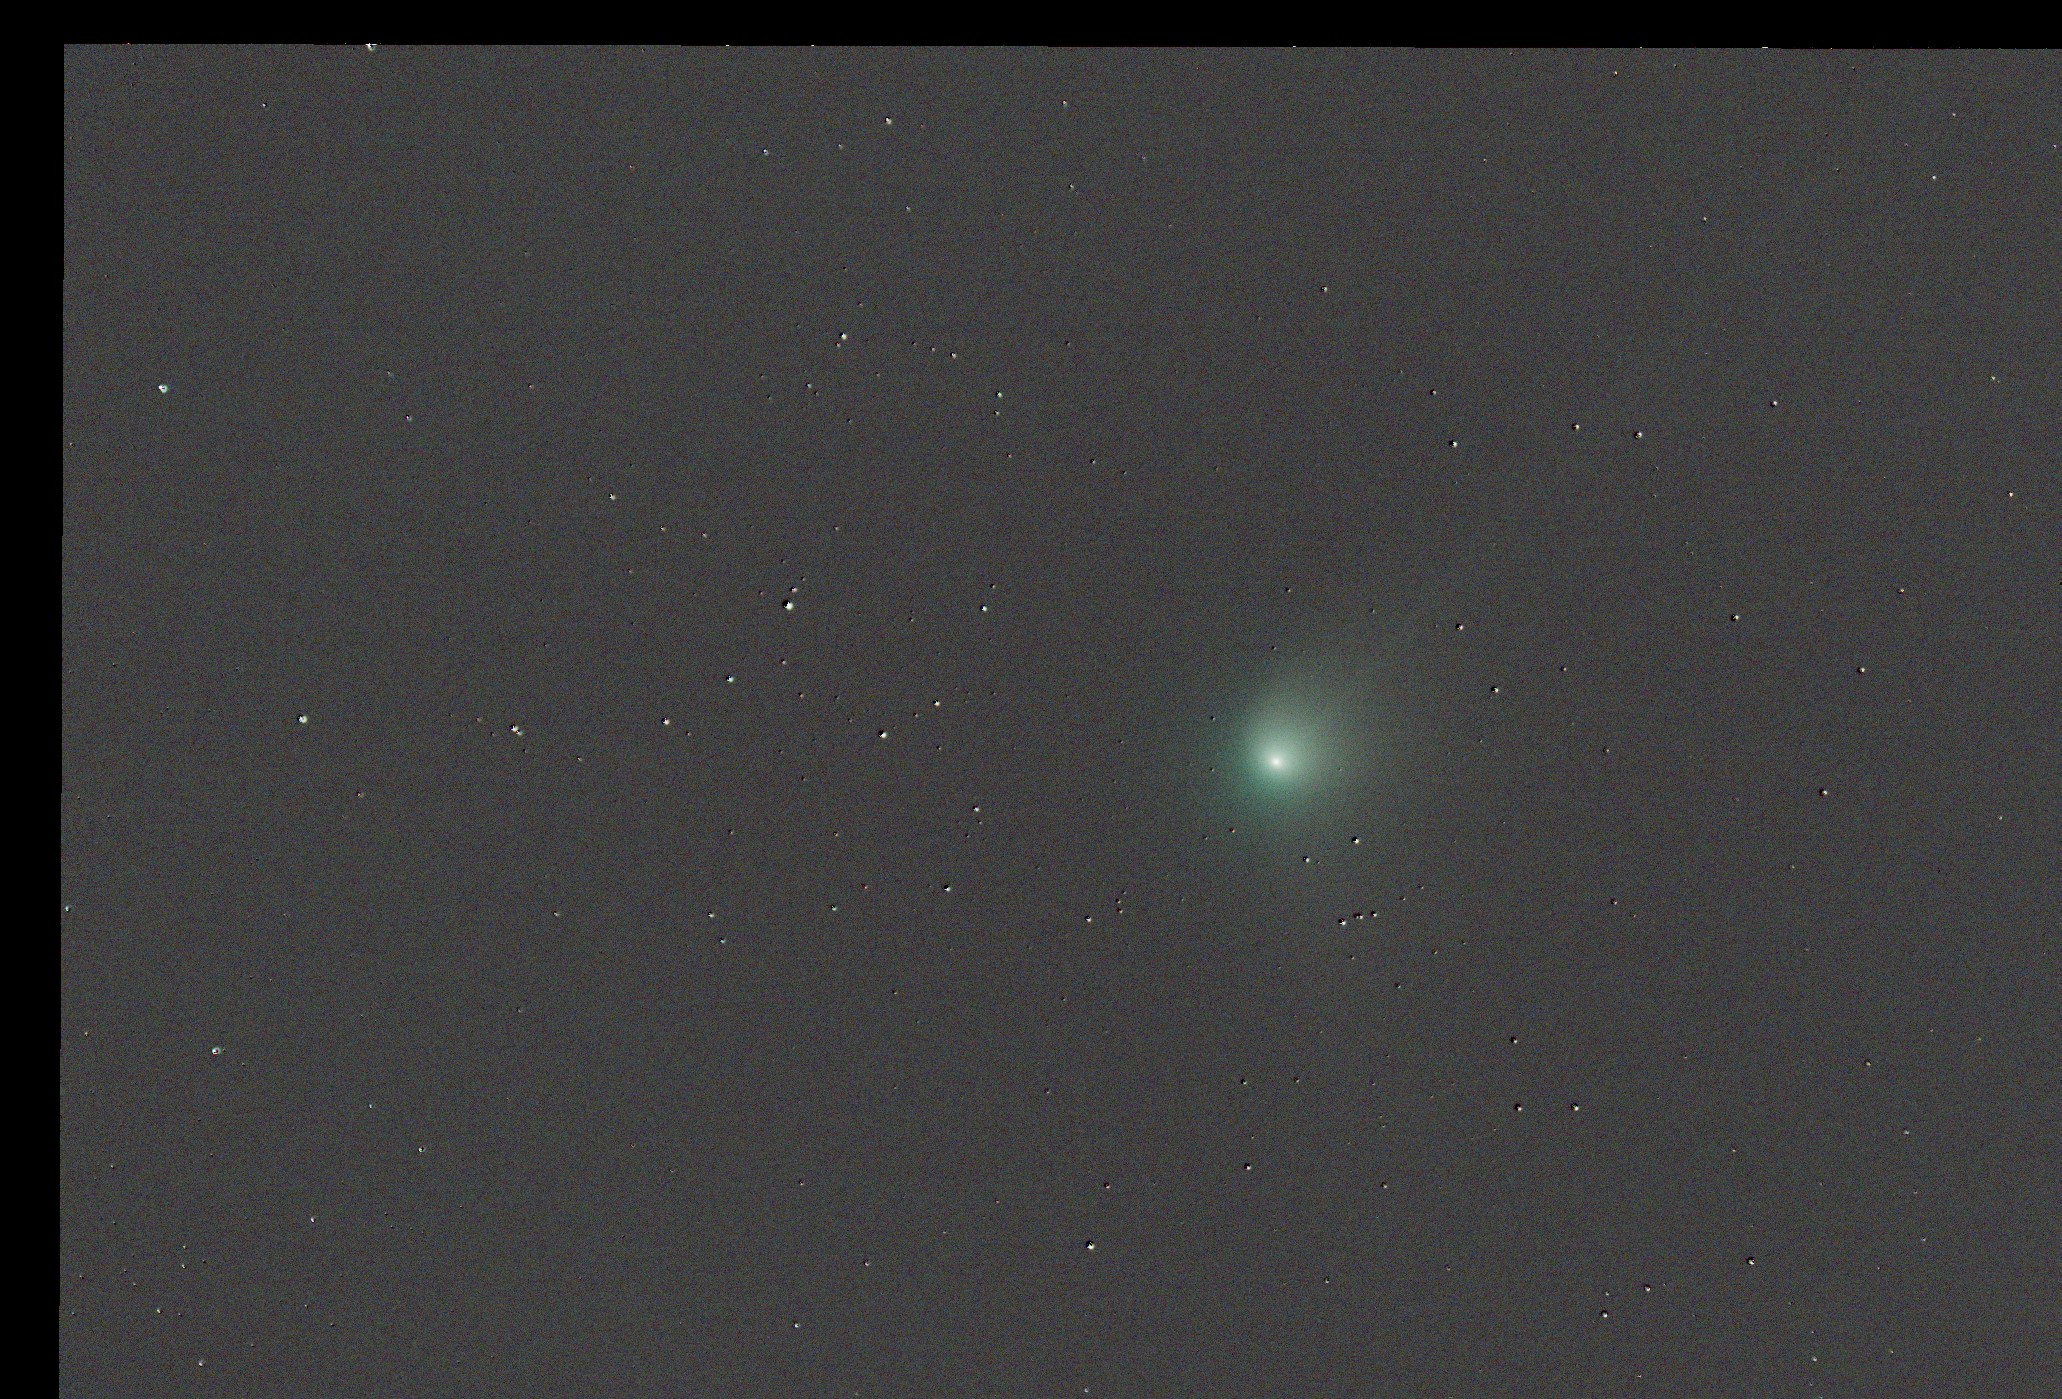 Comet-aligned frame